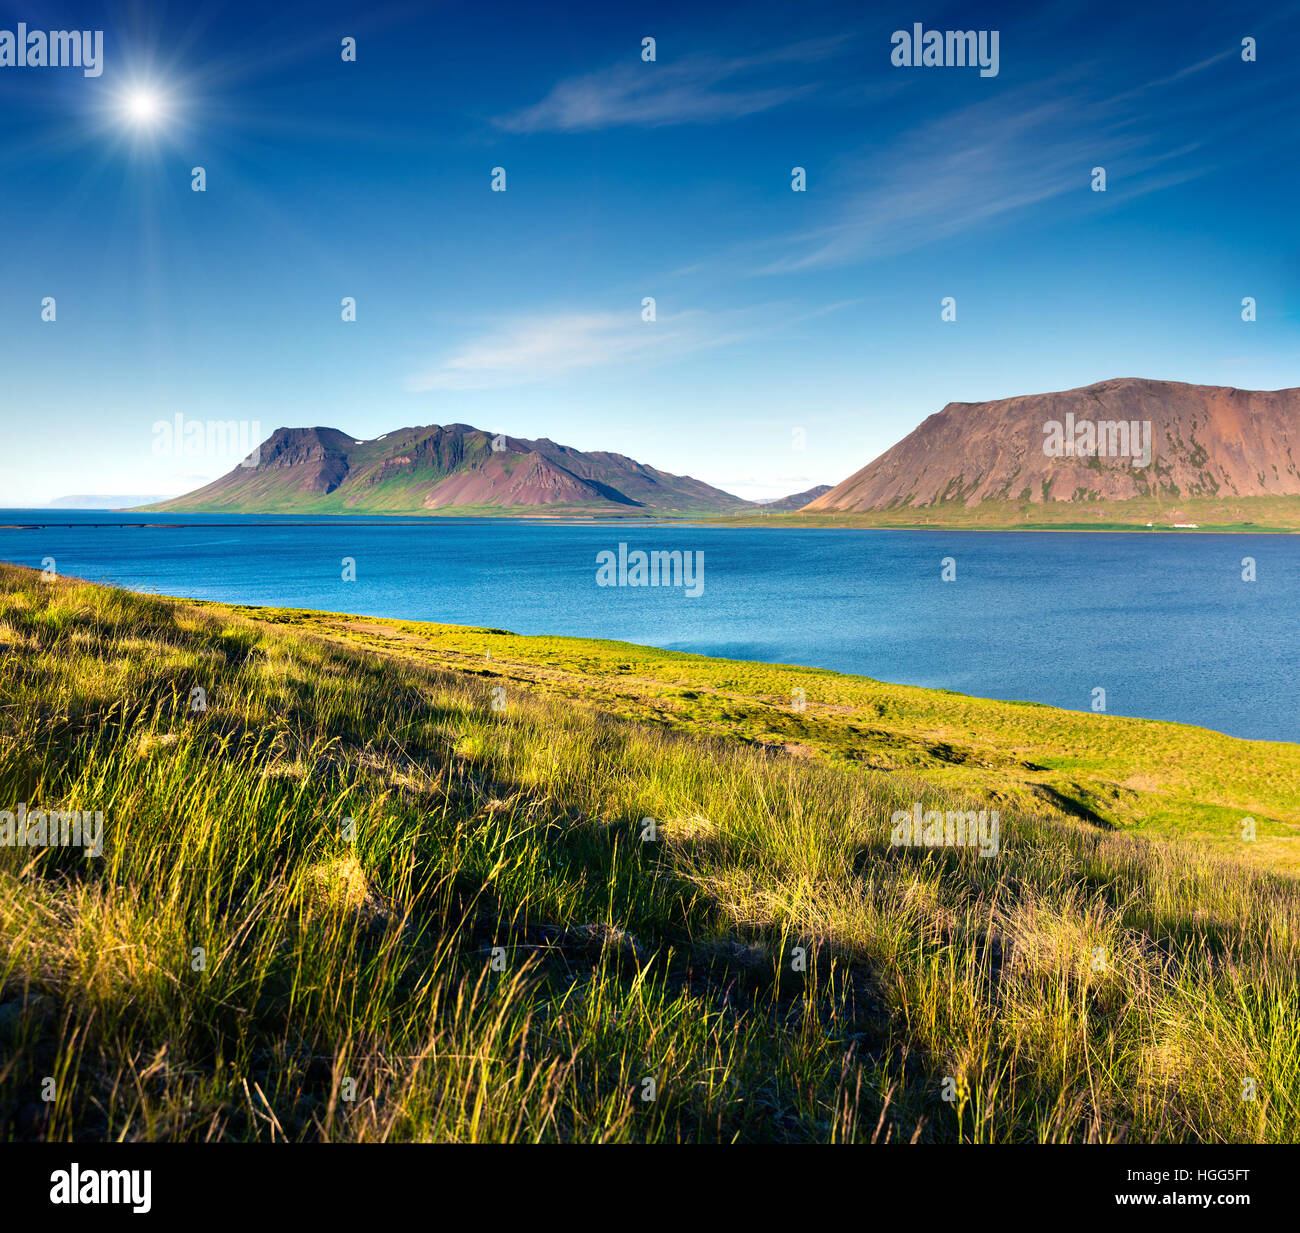 Islandesa típico paisaje con montañas volcánicas y río de agua pura. Soleada mañana de verano en la costa oeste de Islandia. Foto de stock